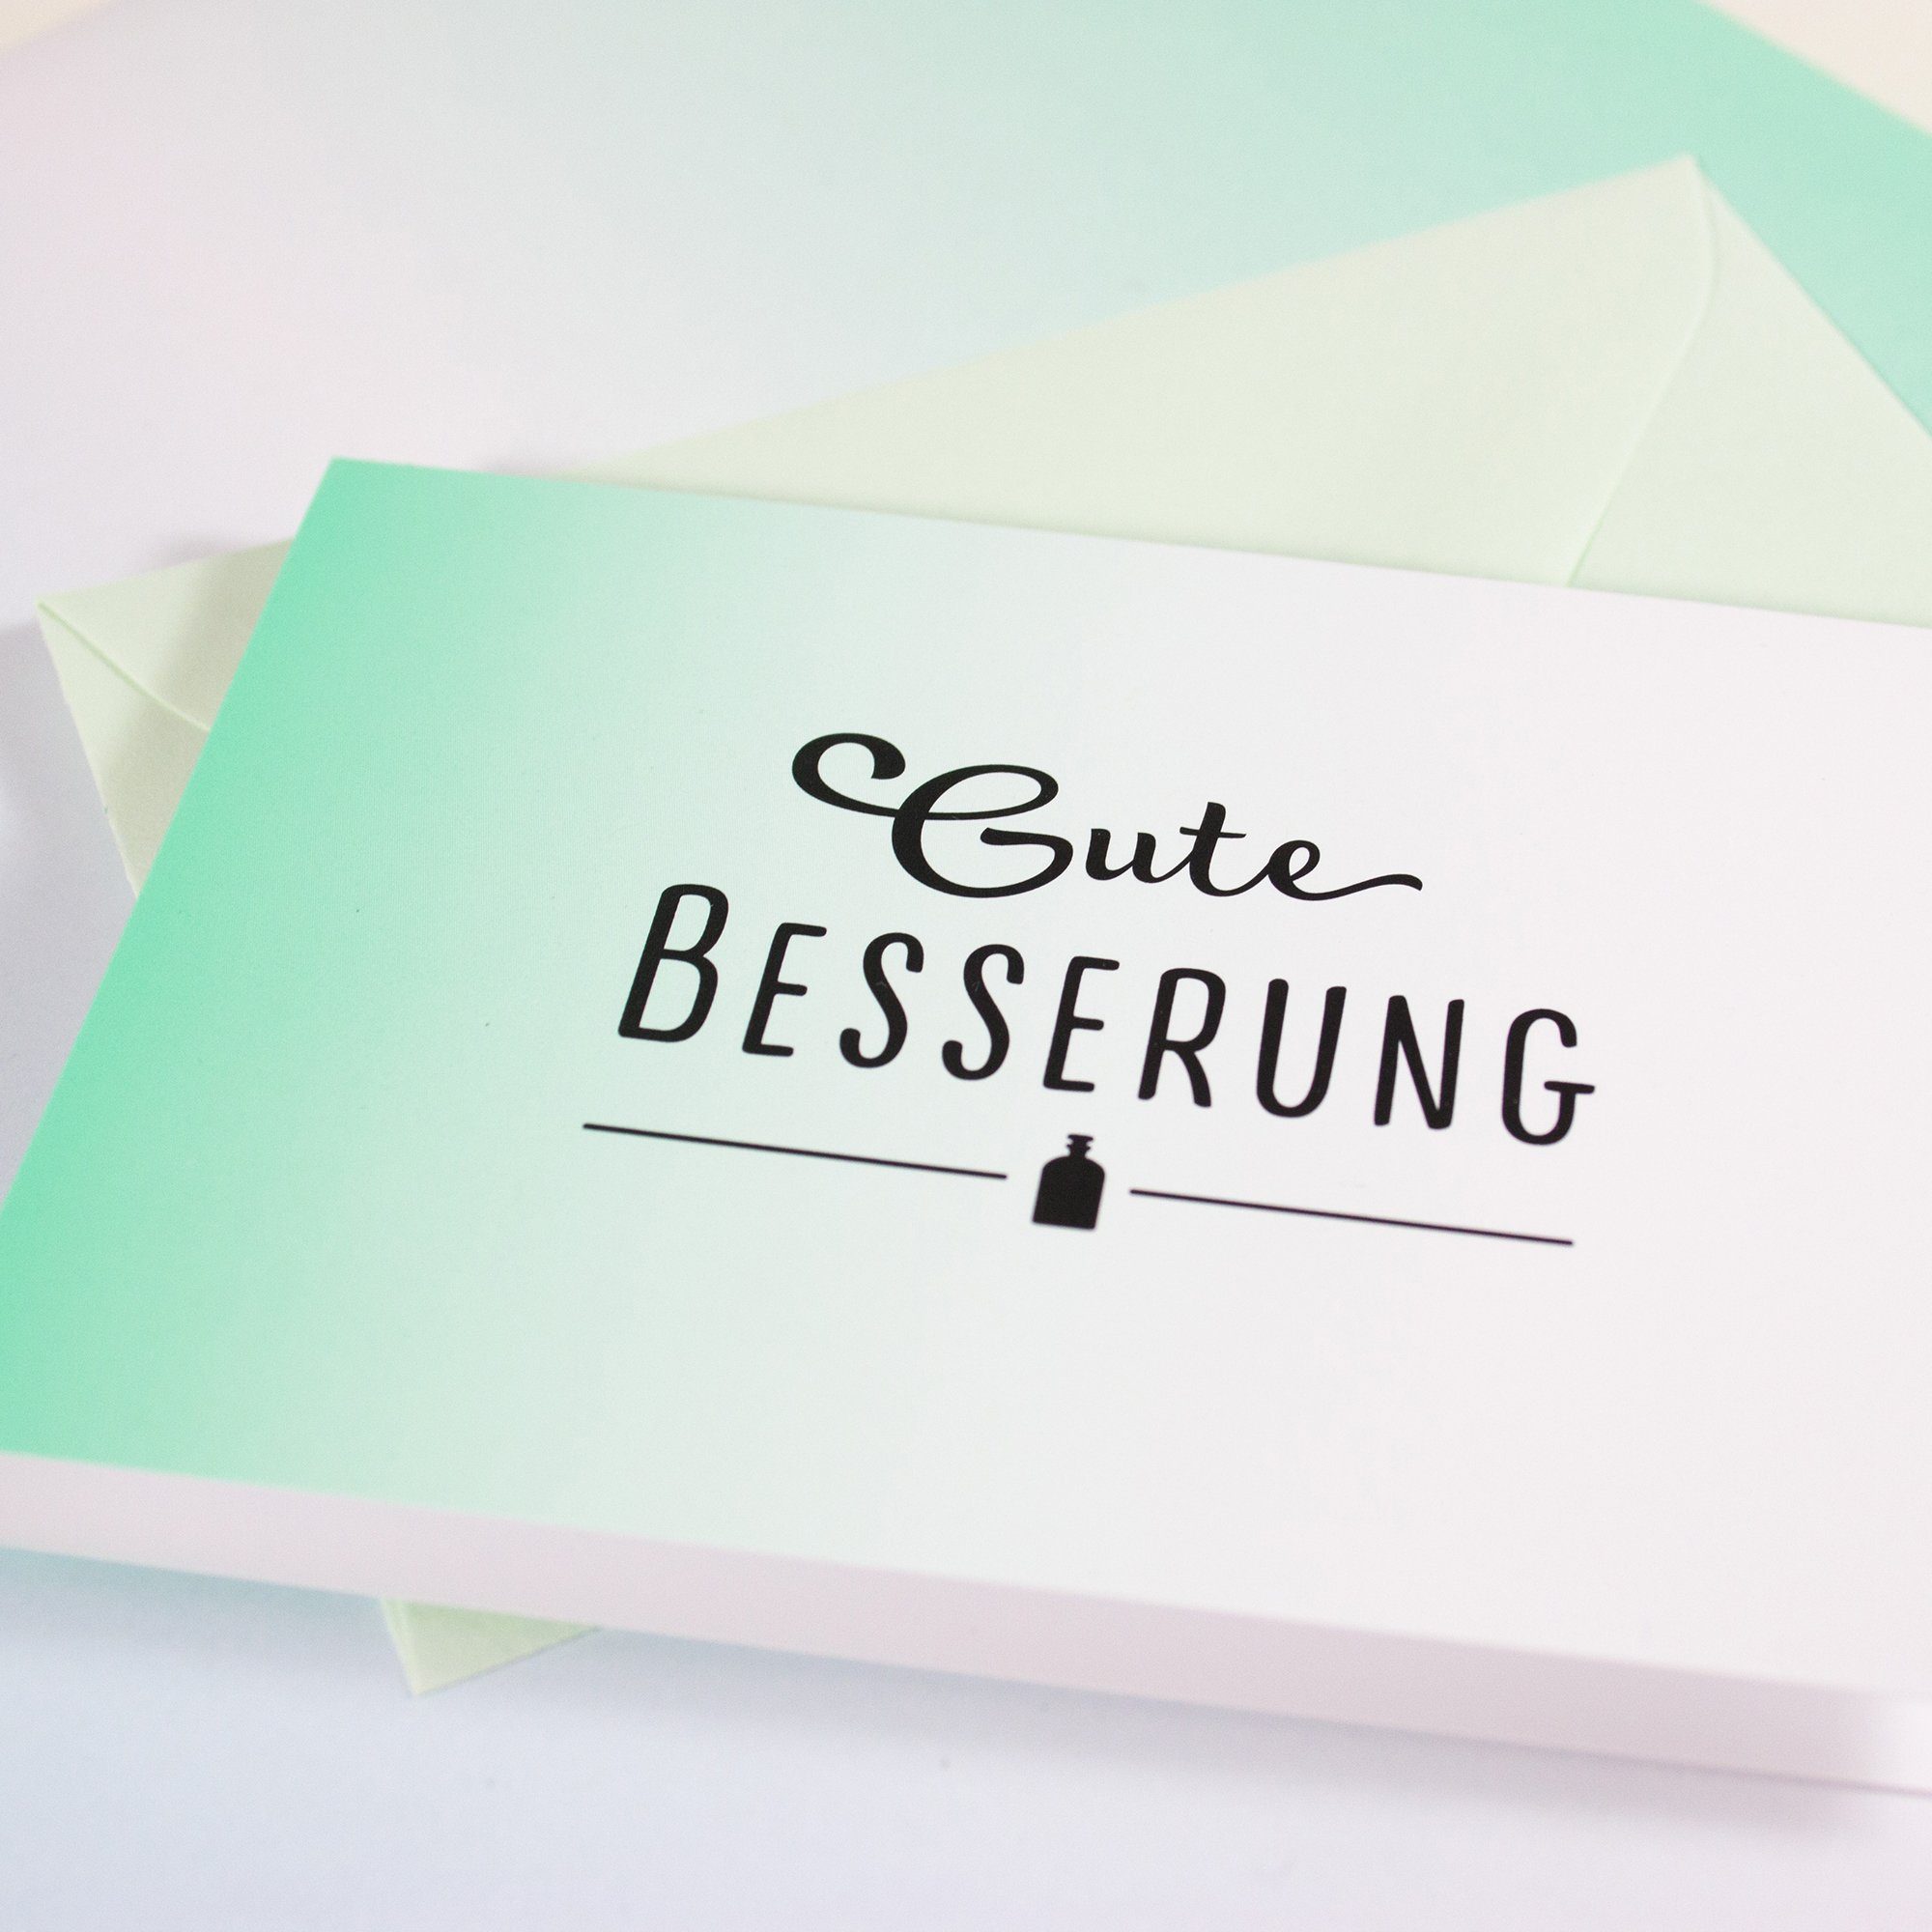 Umschlag Mini-Grußkarte mit Klappkarte Besserung, Gute Grußkarte & Bow Hummingbird